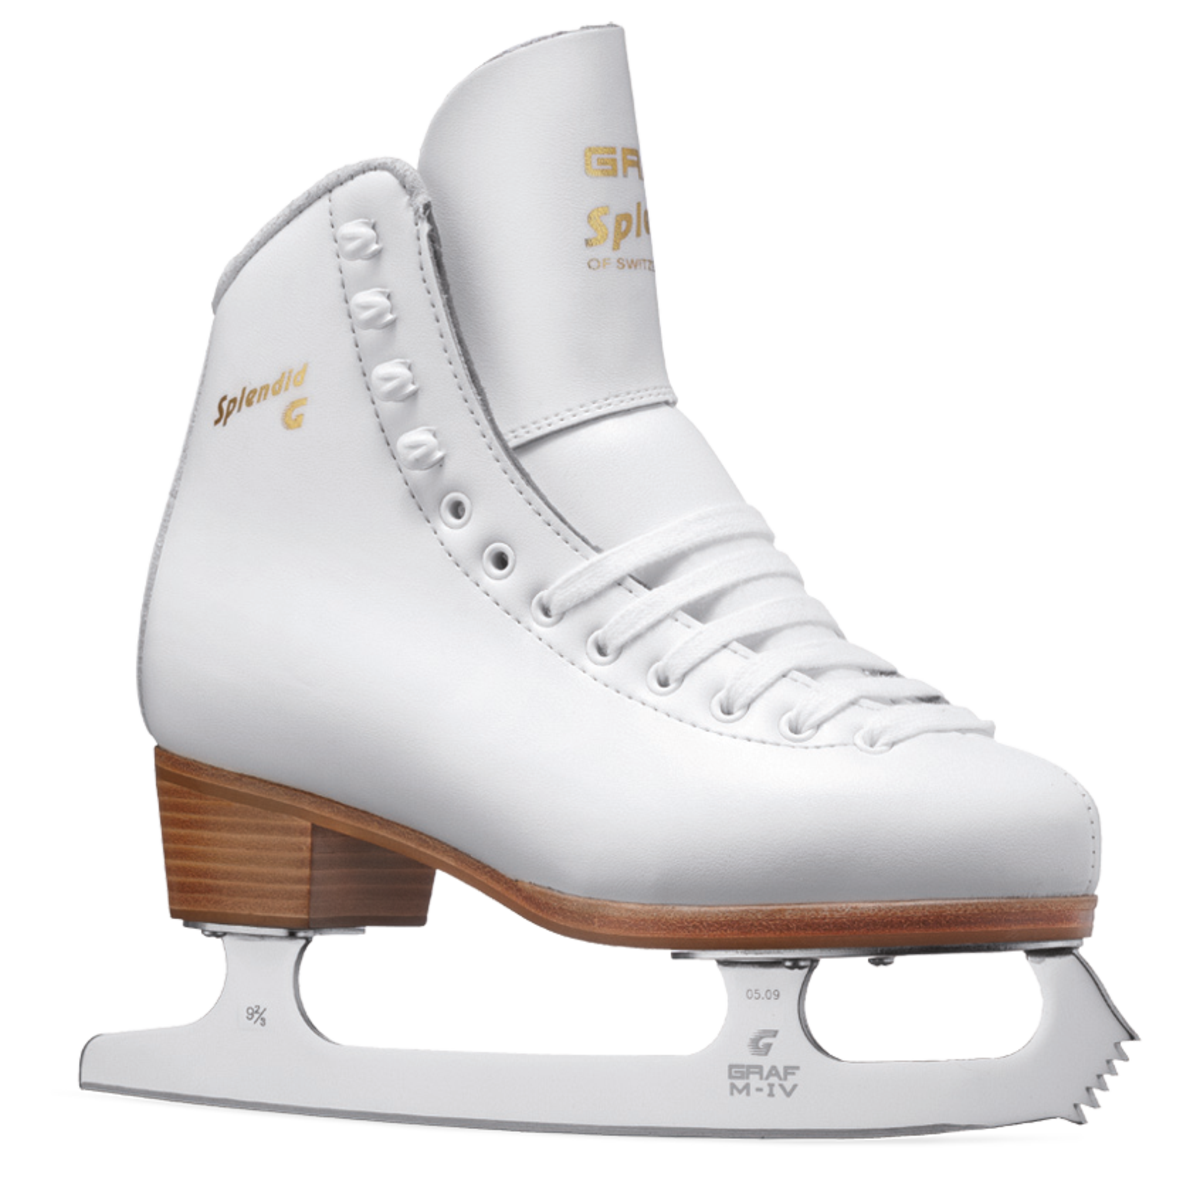 하얀 아이스 스케이팅 신발 다운로드 PNG 이미지